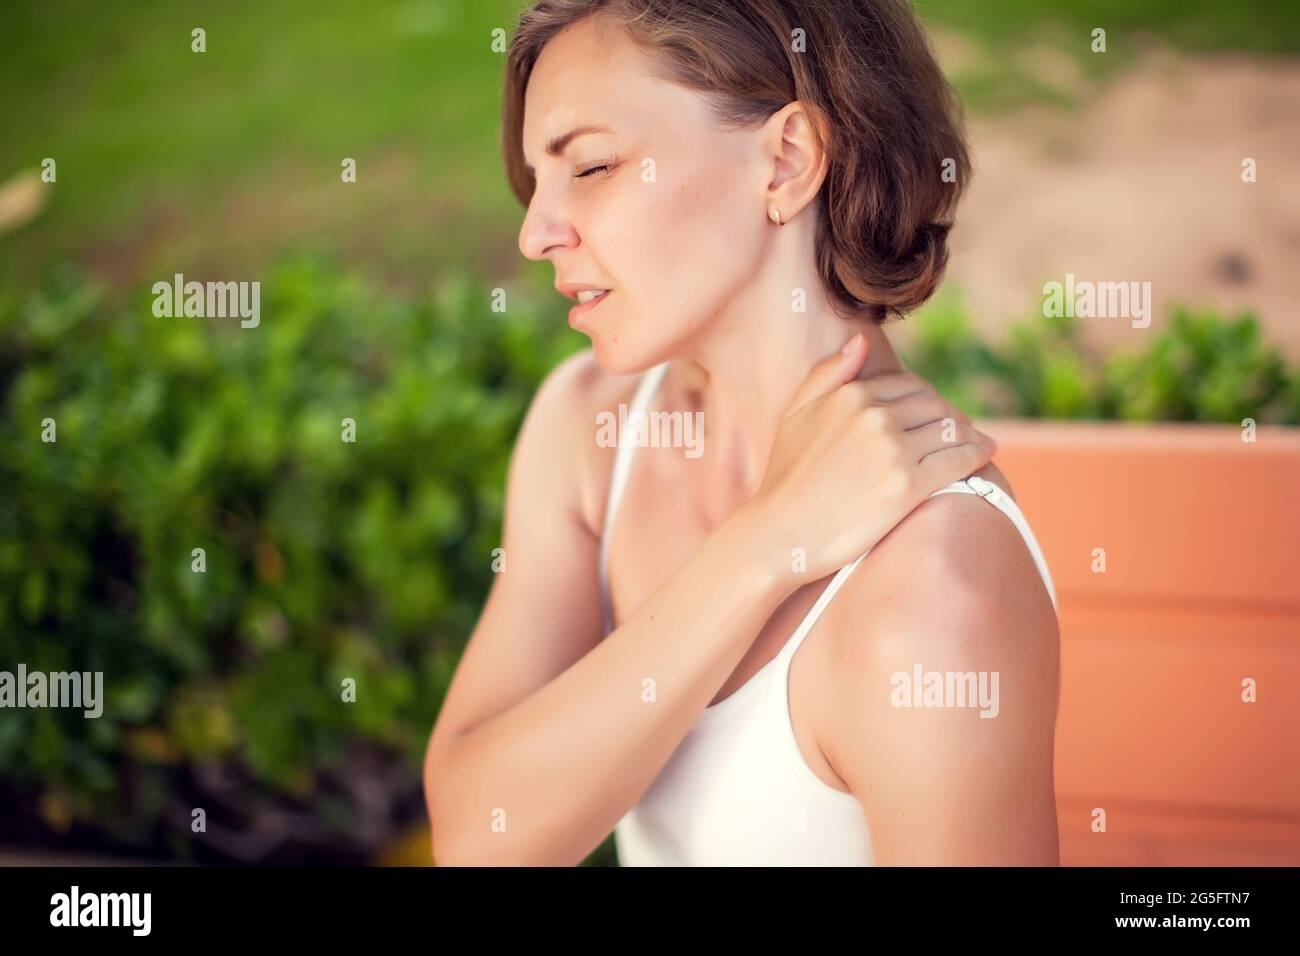 Dolor de cuello. Mujer que siente dolor en el cuello o en el hombro al aire libre. Concepto de salud y estilo de vida Foto de stock